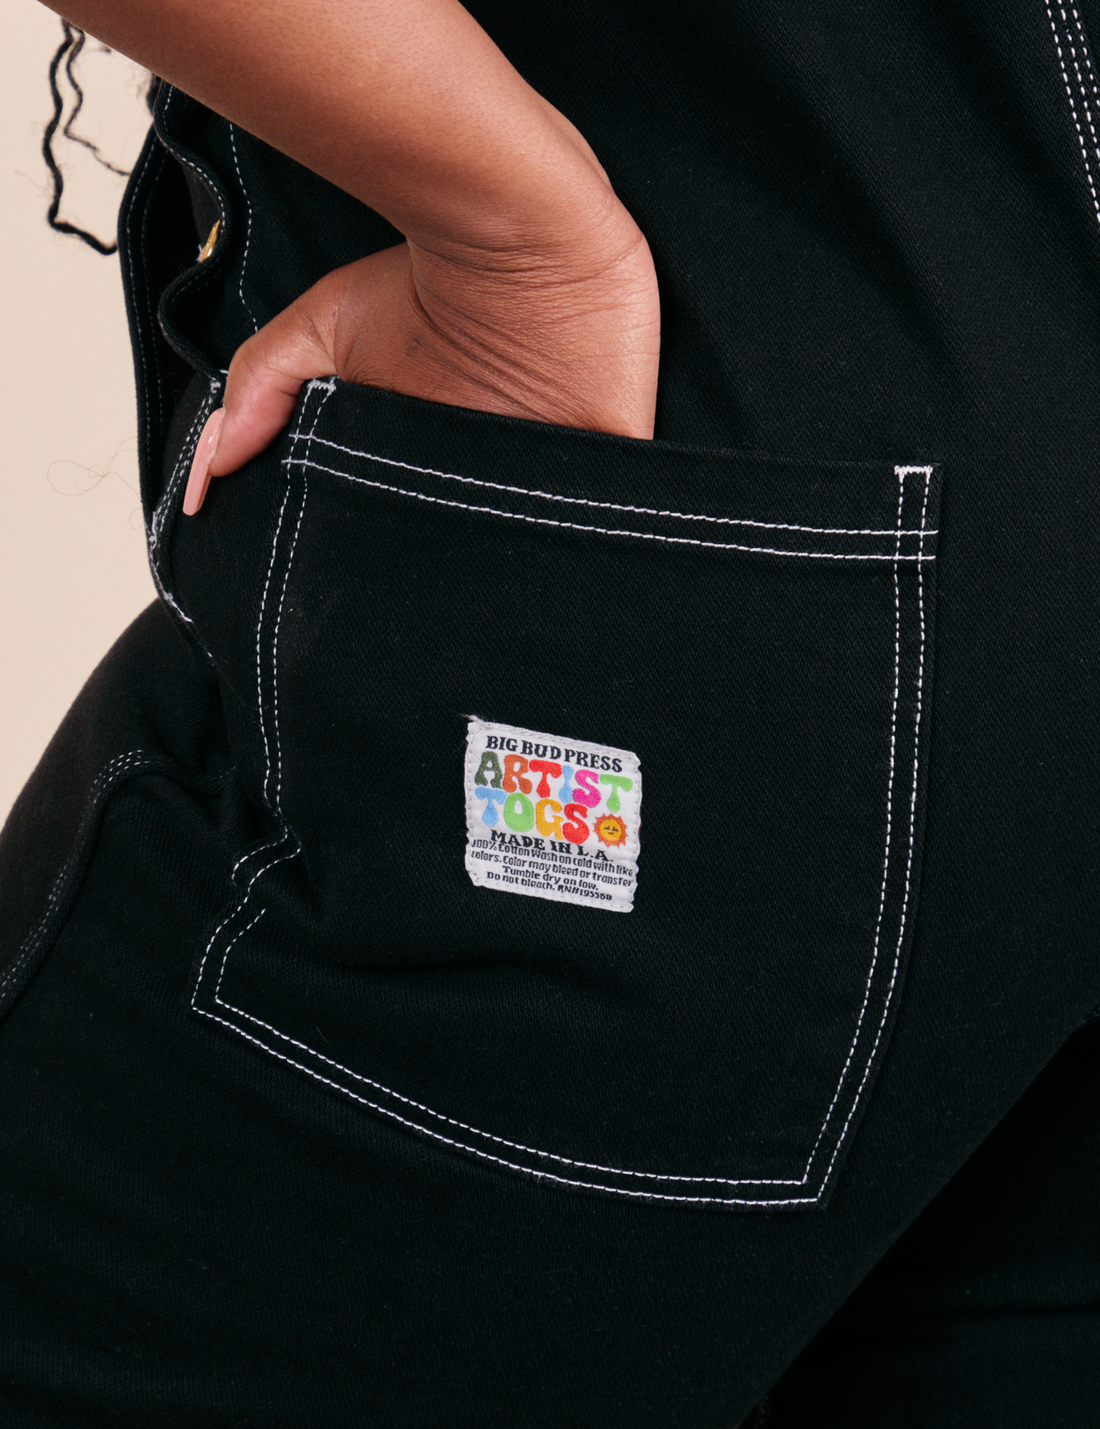 Original Overalls in Black back pocket close up with Artist TOGS label